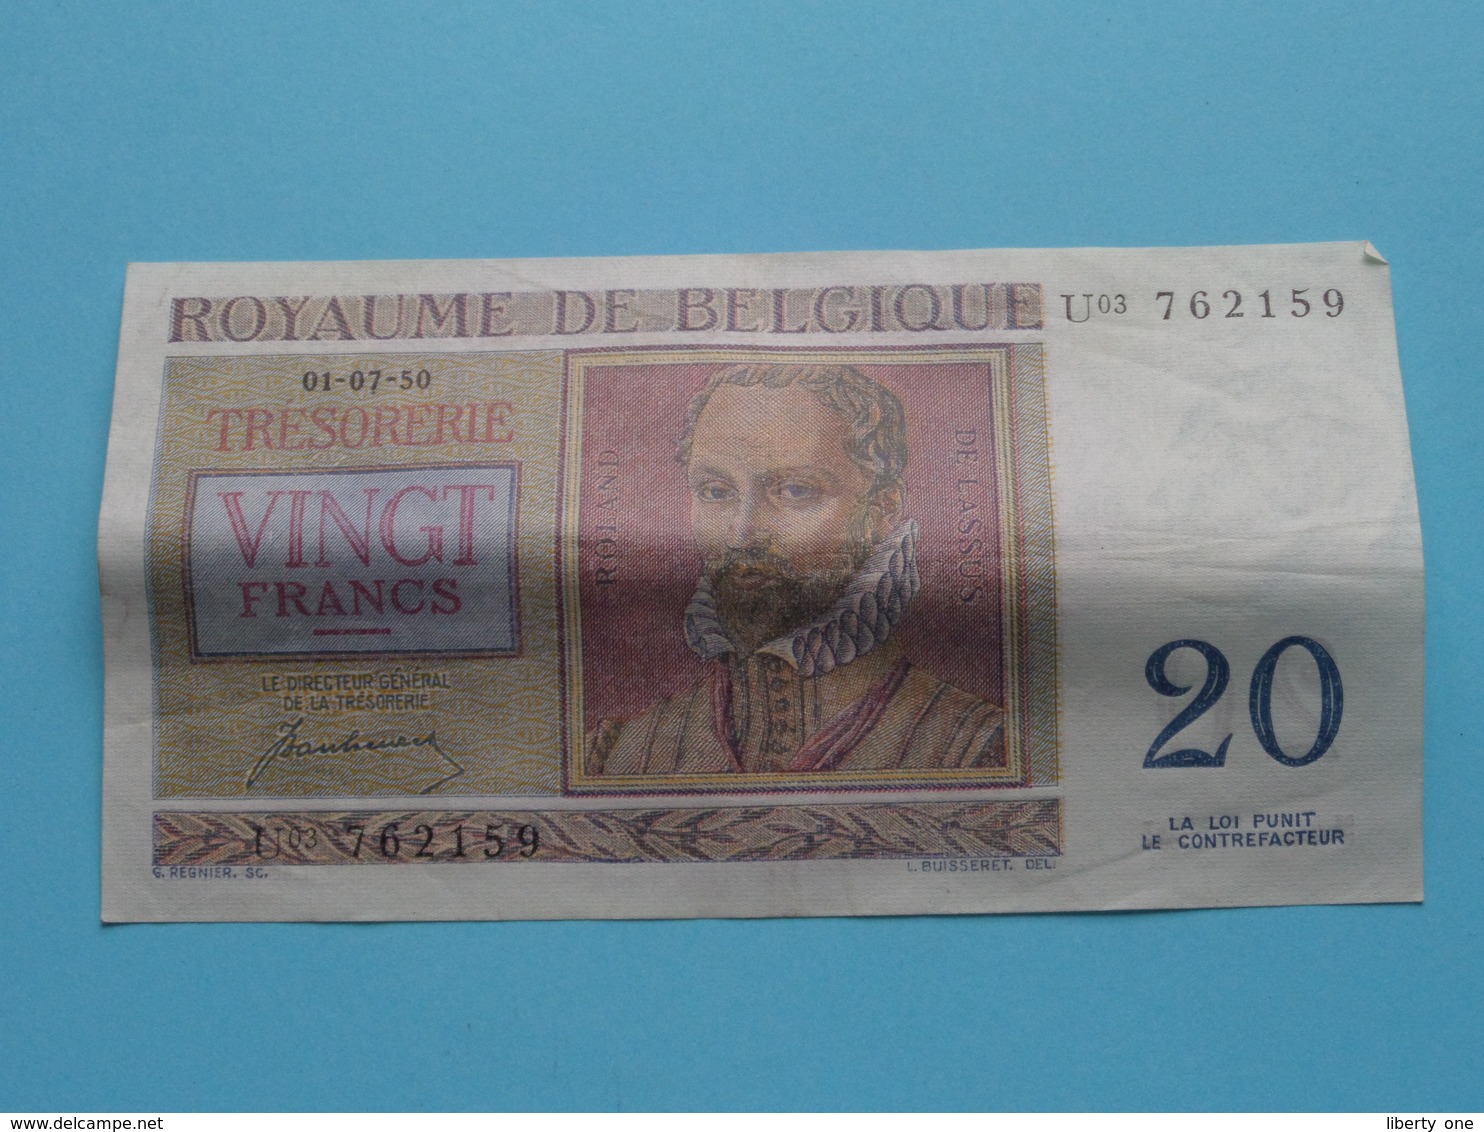 VINGT Francs TWINTIG Frank : U03 762159 ( Thesaurie / Trésorerie - Philippus De Monte ) 01-07-50 > Belgique/België ! - 20 Francs